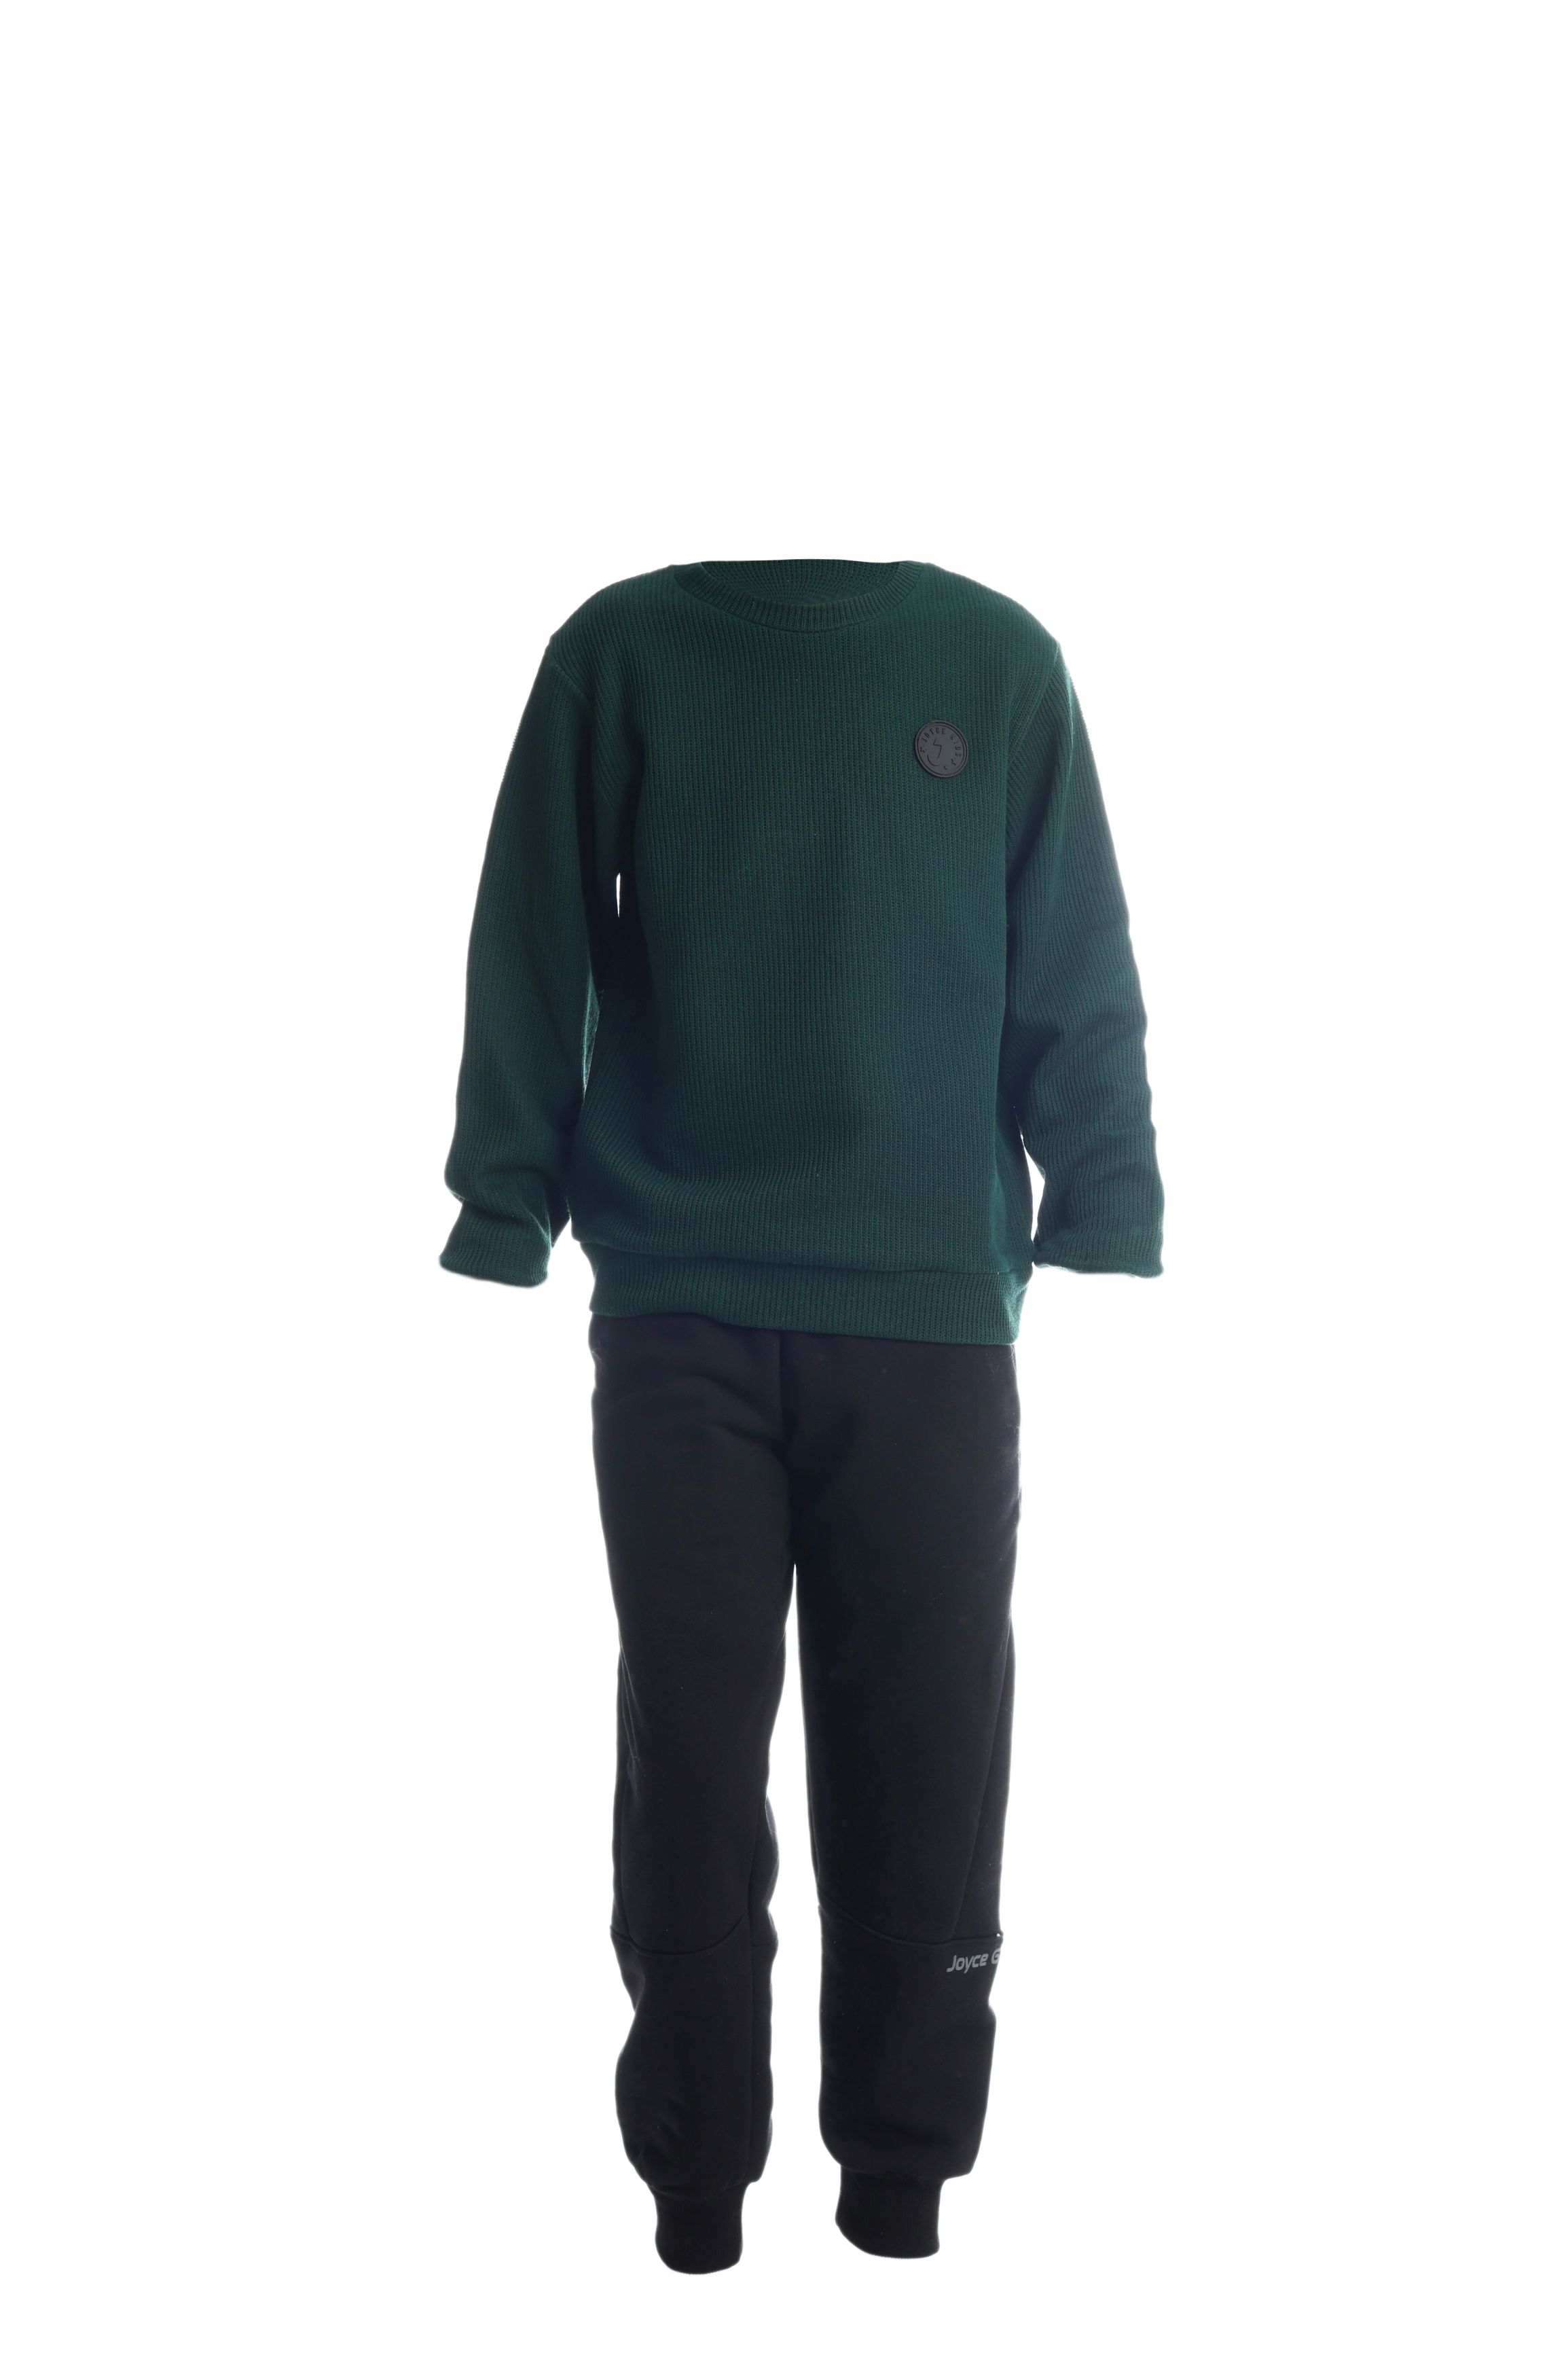 Chlapecké bavlněné tričko/svetr "TAB"/Zelená, vínová Barva: Zelená, Velikost: vel. 14 (150/158 cm)